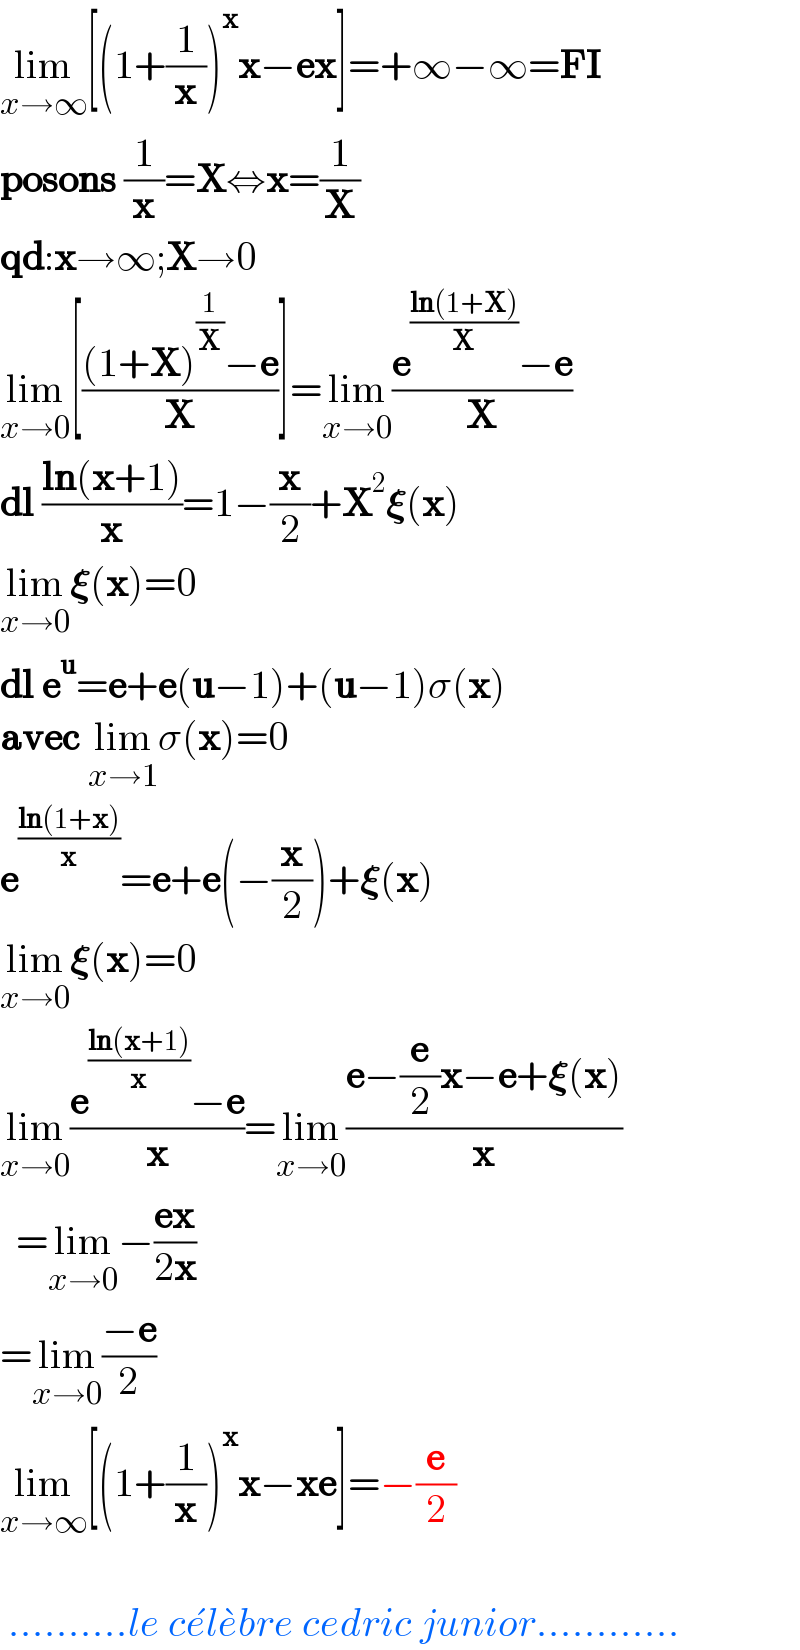 lim_(xâ†’âˆž) [(1+(1/x))^x xâˆ’ex]=+âˆžâˆ’âˆž=FI  posons (1/x)=Xâ‡”x=(1/X)  qd:xâ†’âˆž;Xâ†’0  lim_(xâ†’0) [(((1+X)^(1/X) âˆ’e)/X)]=lim_(xâ†’0) ((e^((ln(1+X))/X) âˆ’e)/X)  dl ((ln(x+1))/x)=1âˆ’(x/2)+X^2 ð�›�(x)  lim_(xâ†’0) ð�›�(x)=0  dl e^u =e+e(uâˆ’1)+(uâˆ’1)Ïƒ(x)  avec lim_(xâ†’1) Ïƒ(x)=0  e^((ln(1+x))/x) =e+e(âˆ’(x/2))+ð�›�(x)  lim_(xâ†’0) ð�›�(x)=0  lim_(xâ†’0) ((e^((ln(x+1))/x) âˆ’e)/x)=lim_(xâ†’0) ((eâˆ’(e/2)xâˆ’e+ð�›�(x))/x)    =lim_(xâ†’0) âˆ’((ex)/(2x))  =lim_(xâ†’0) ((âˆ’e)/2)  lim_(xâ†’âˆž) [(1+(1/x))^x xâˆ’xe]=âˆ’(e/2)      ..........le ce^  le^  bre cedric junior............  